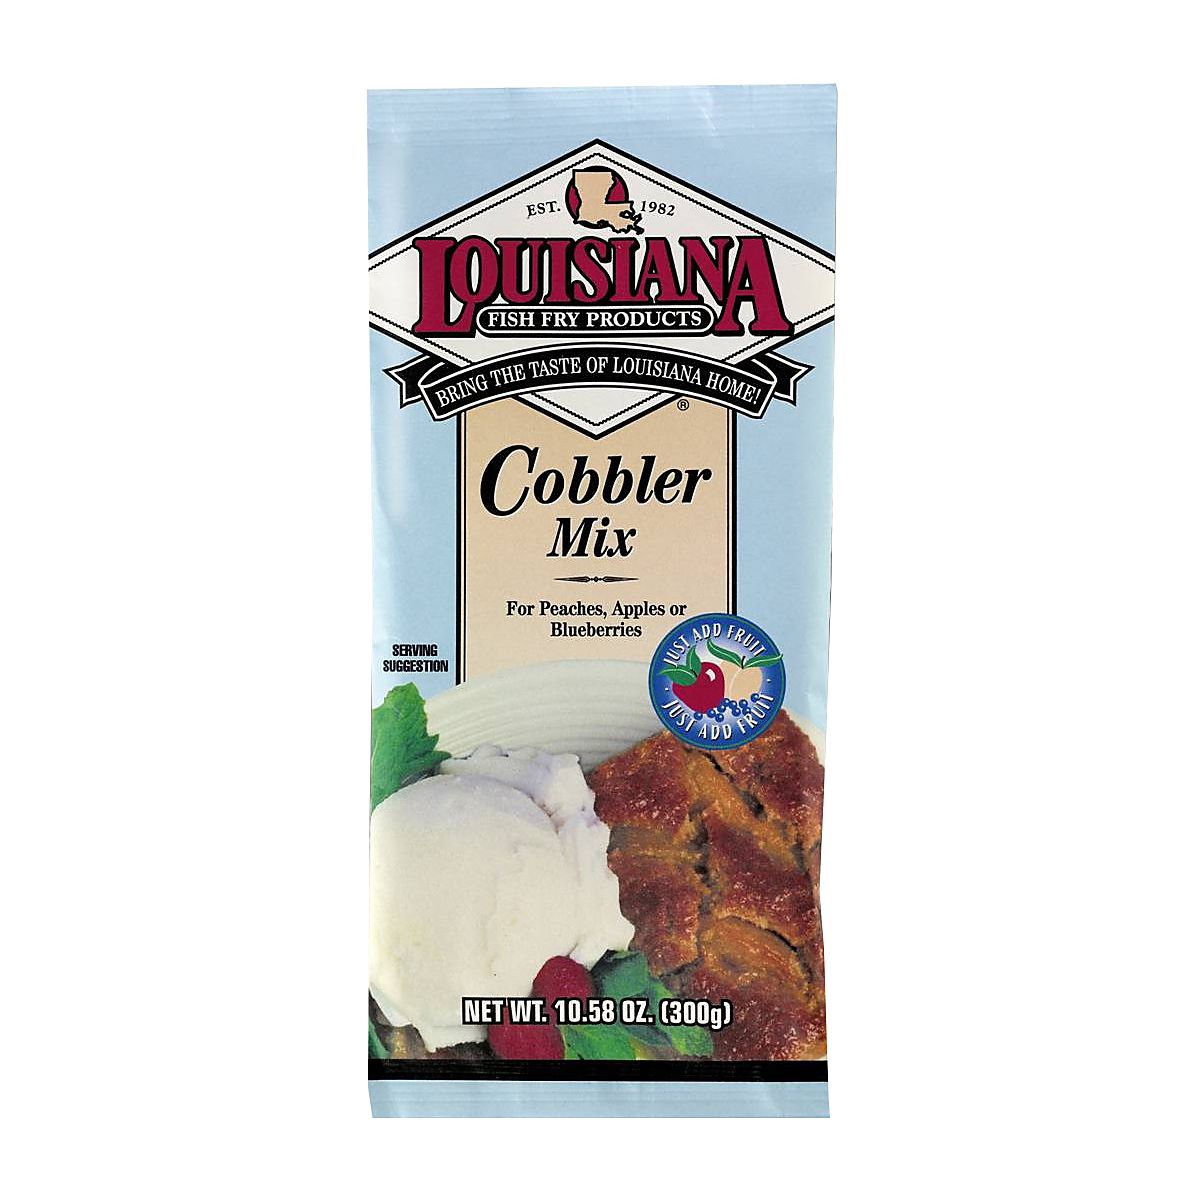 Louisiana Fish Fry Cobbler Mix (12x10.58Oz), Baking Essentials